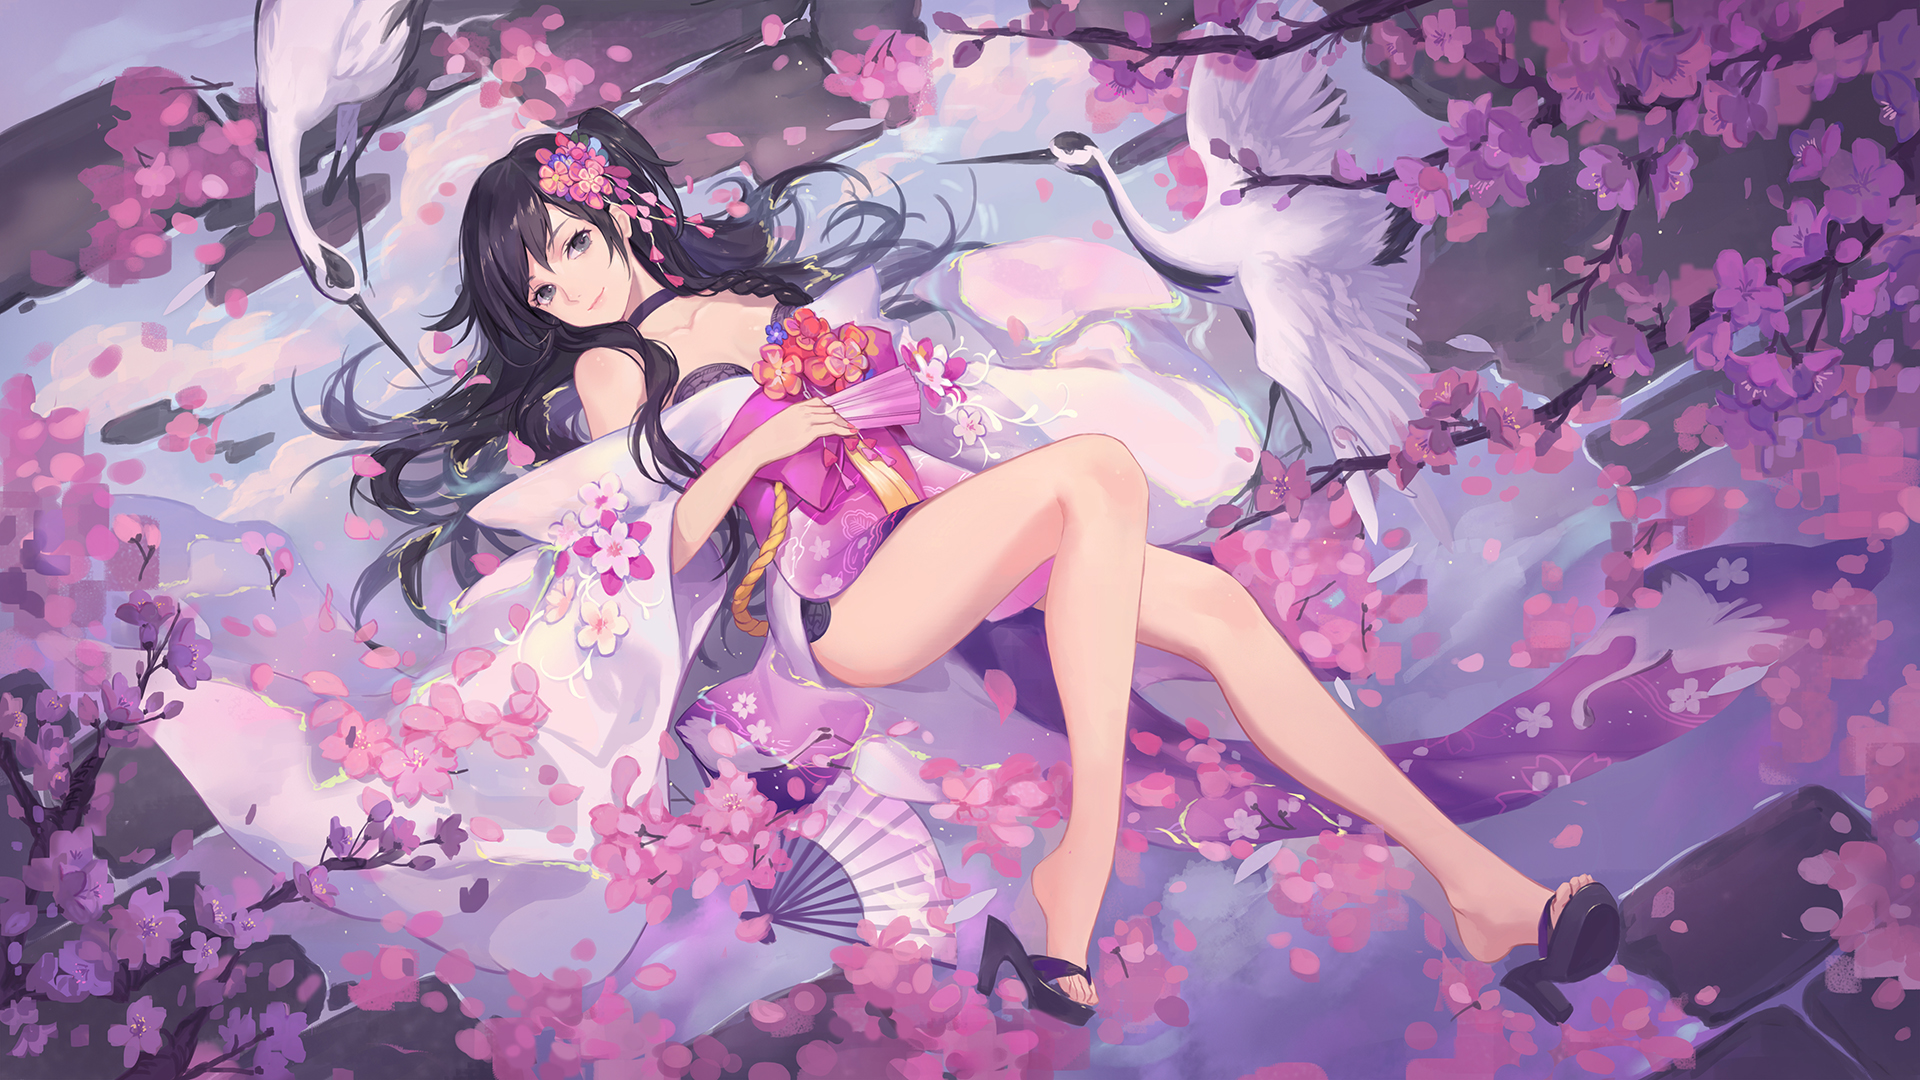 Wallpaper Lying down, anime girl, swans, blossom, original